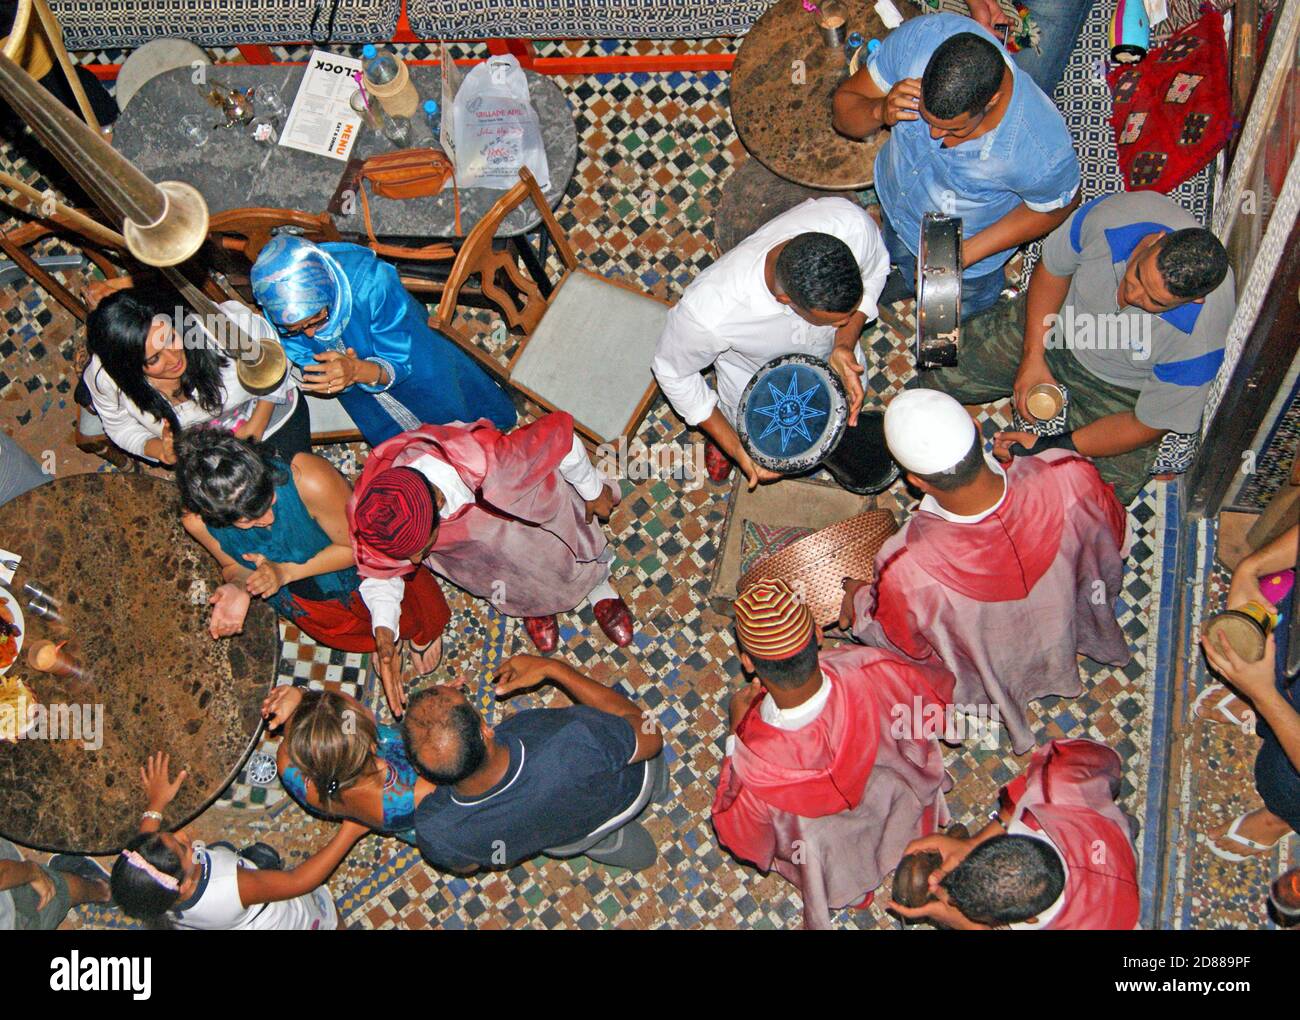 Ein Blick von oben auf die interkulturellen Interaktionen unten im Café Clock in Fès, Marokko, wo Musiker, Einheimische und Touristen zusammenkommen. Stockfoto